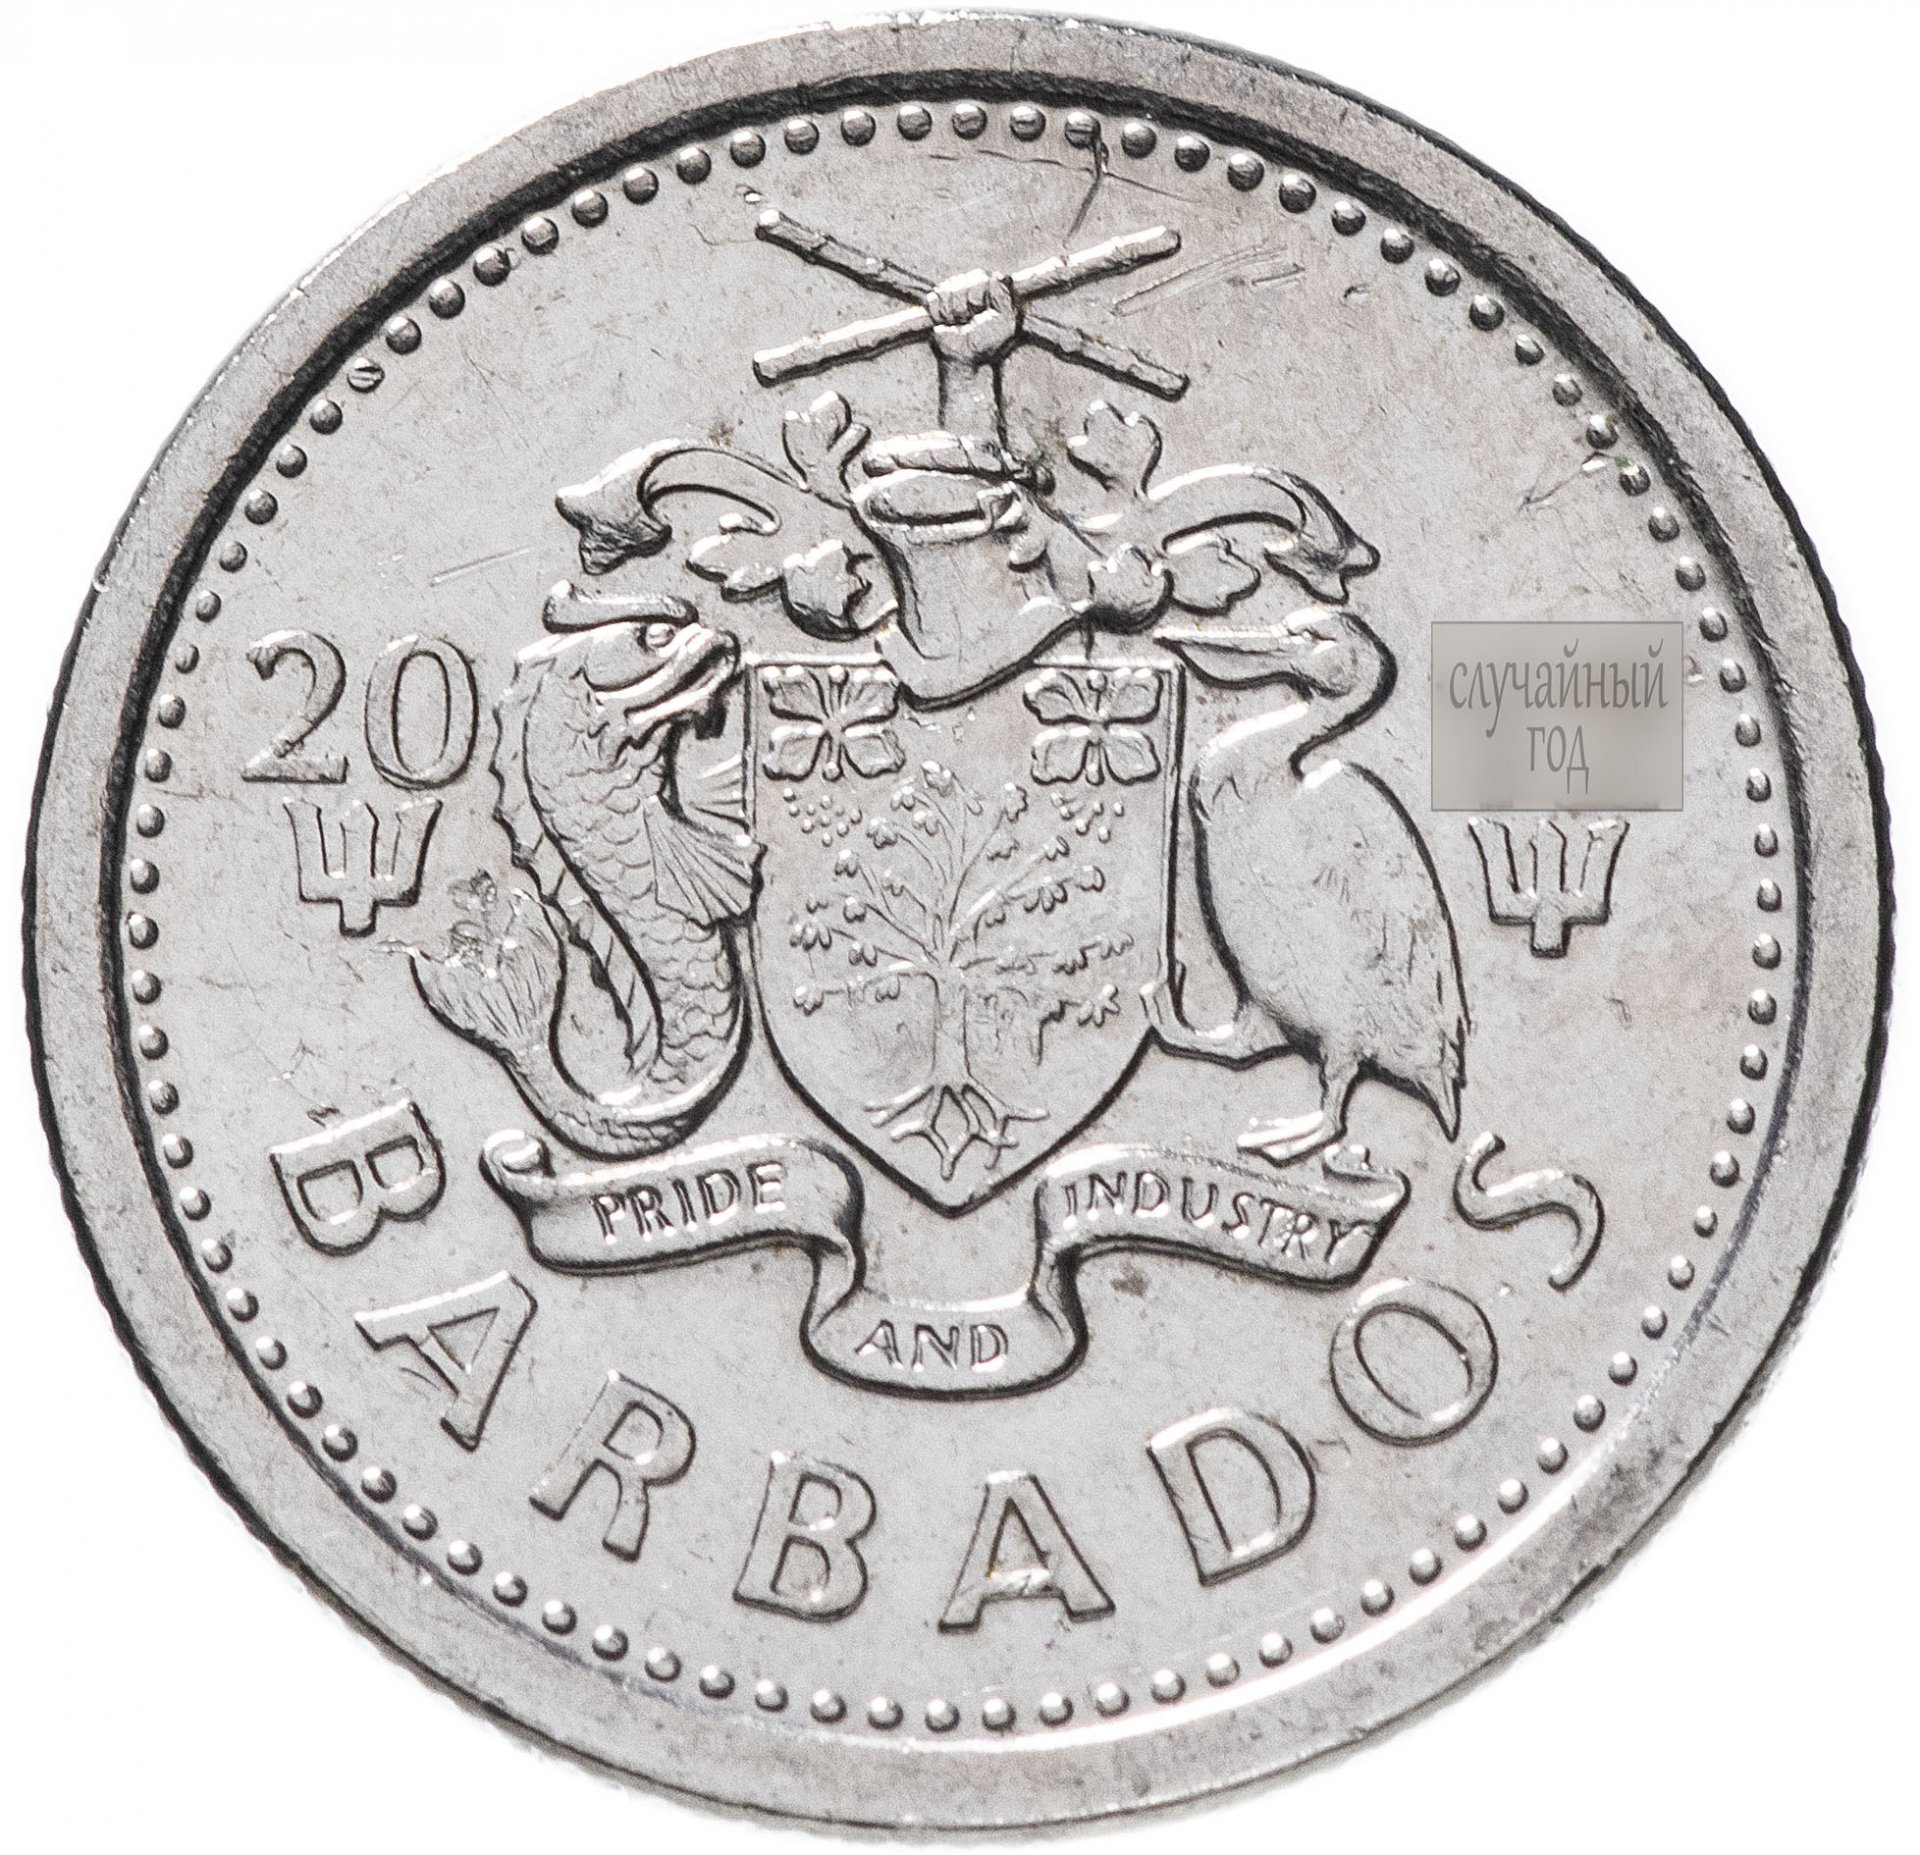 Купить монеты в монетнике в москве. 10 Центов Барбадос. Монеты Барбадоса. Цент монета. Монета 10 центов.